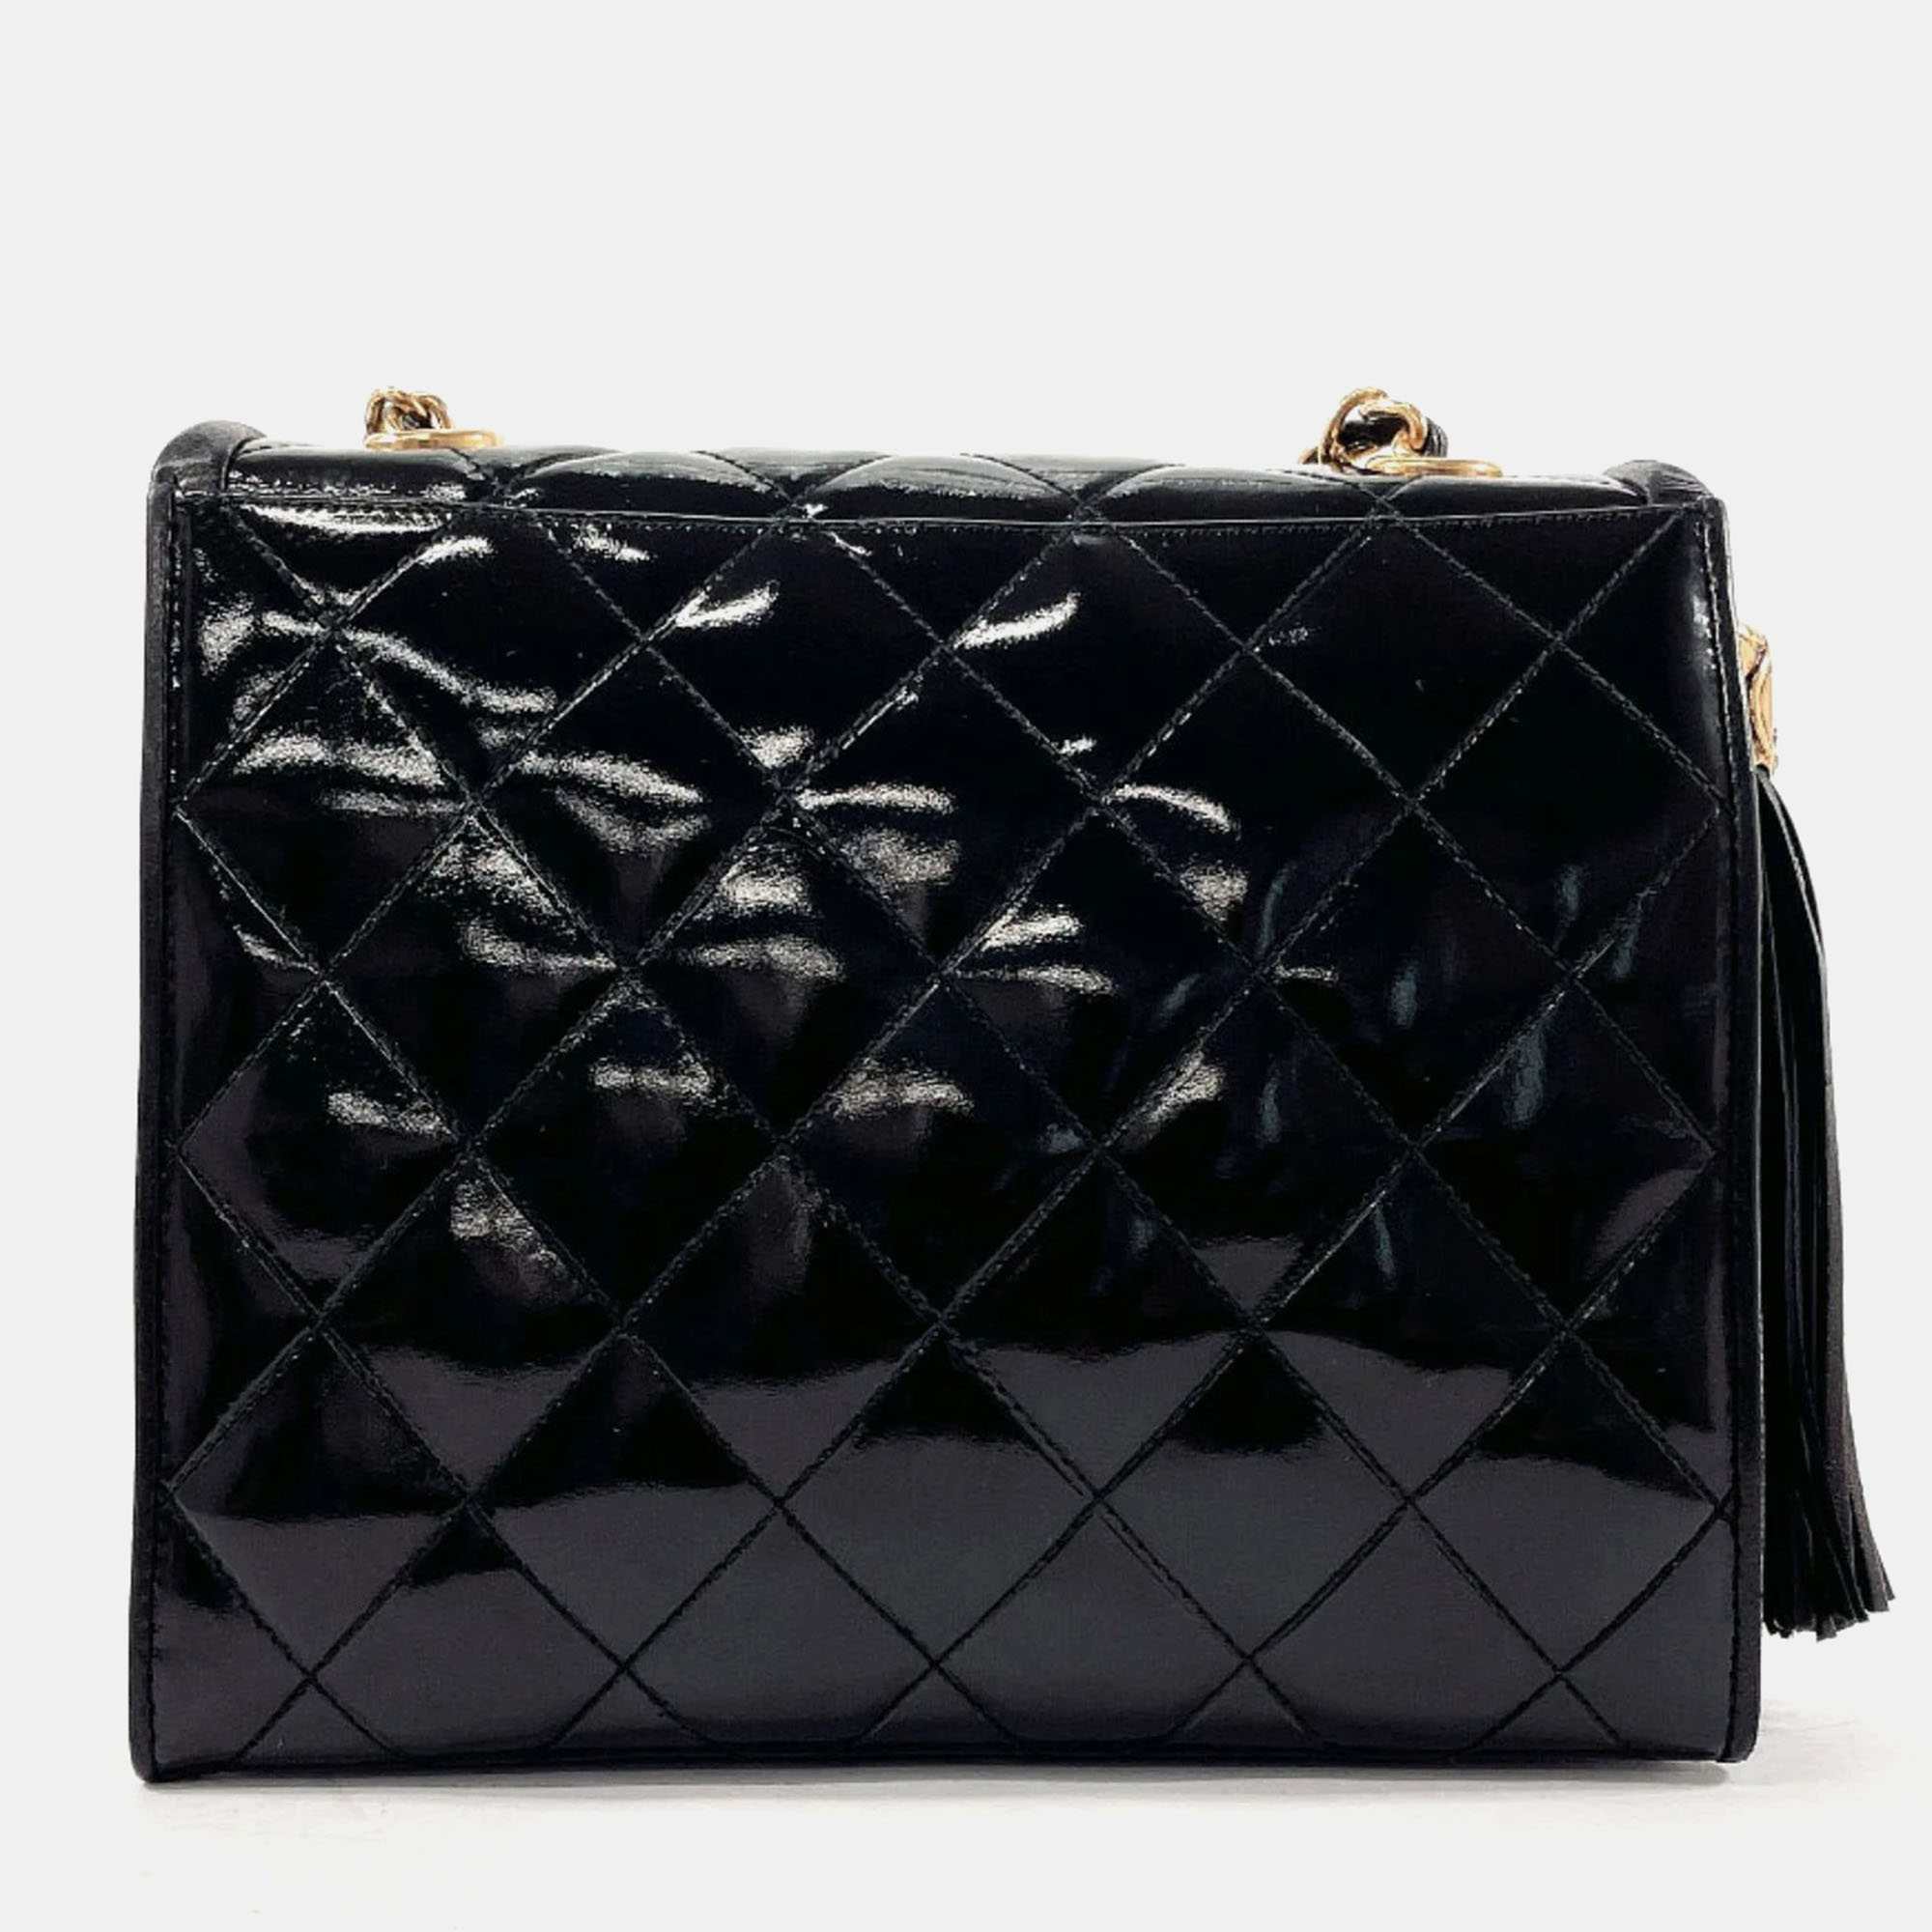 

Chanel Black Patent Leather Fringe Tassel Flap Bag